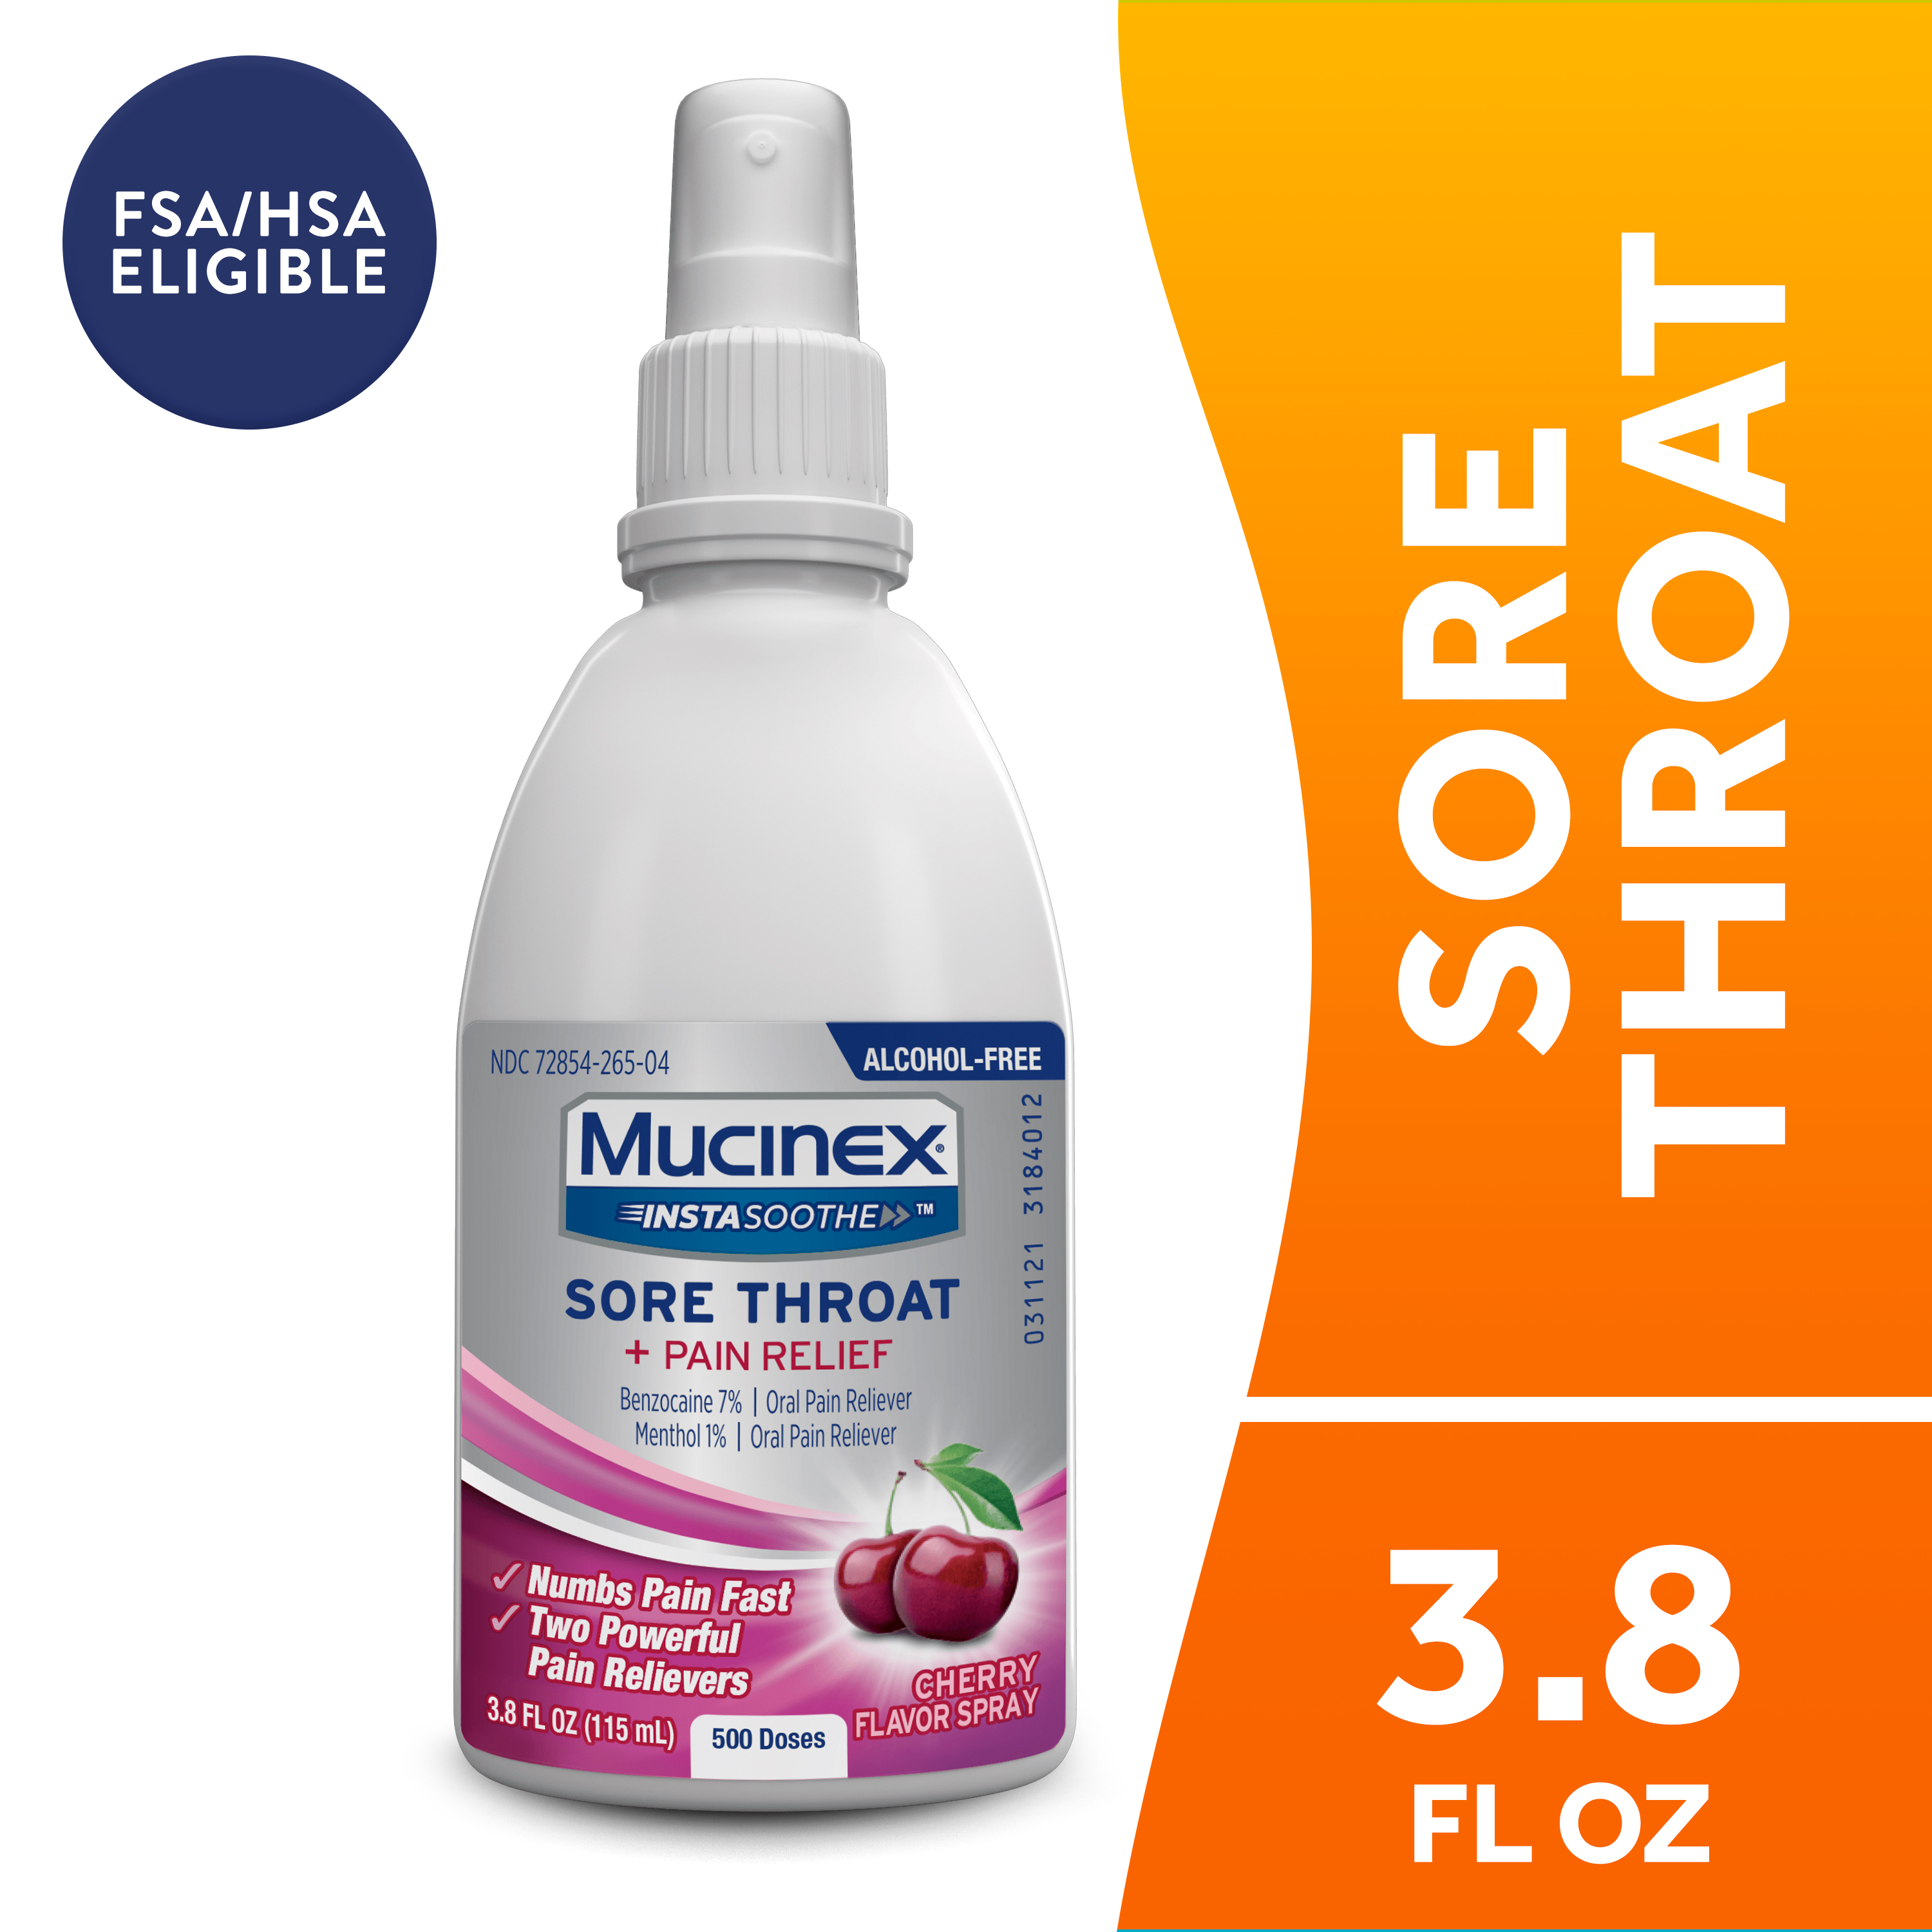 Mucinex® InstaSoothe Sore Throat + Pain Relief Sore Throat Spray. Powerful sore throat relief with soothing cherry flavor. - image 1 of 11